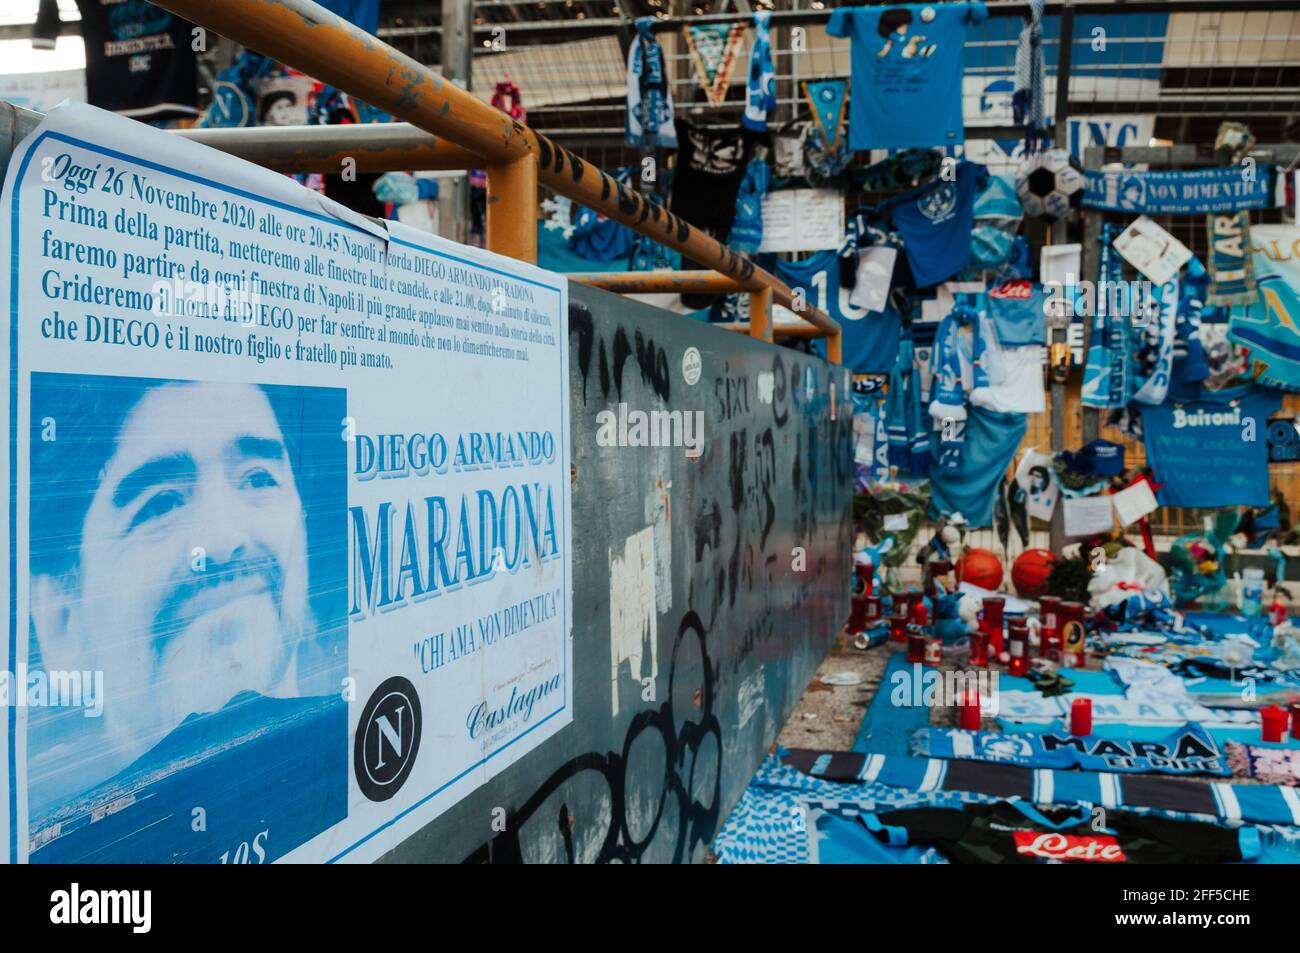 Maradona: Continua ad essere pianto e celebrato, osannato e portato in trionfo attraverso striscioni,cori,cartelli, lettere, disegni e gesti simbolici Stockfoto